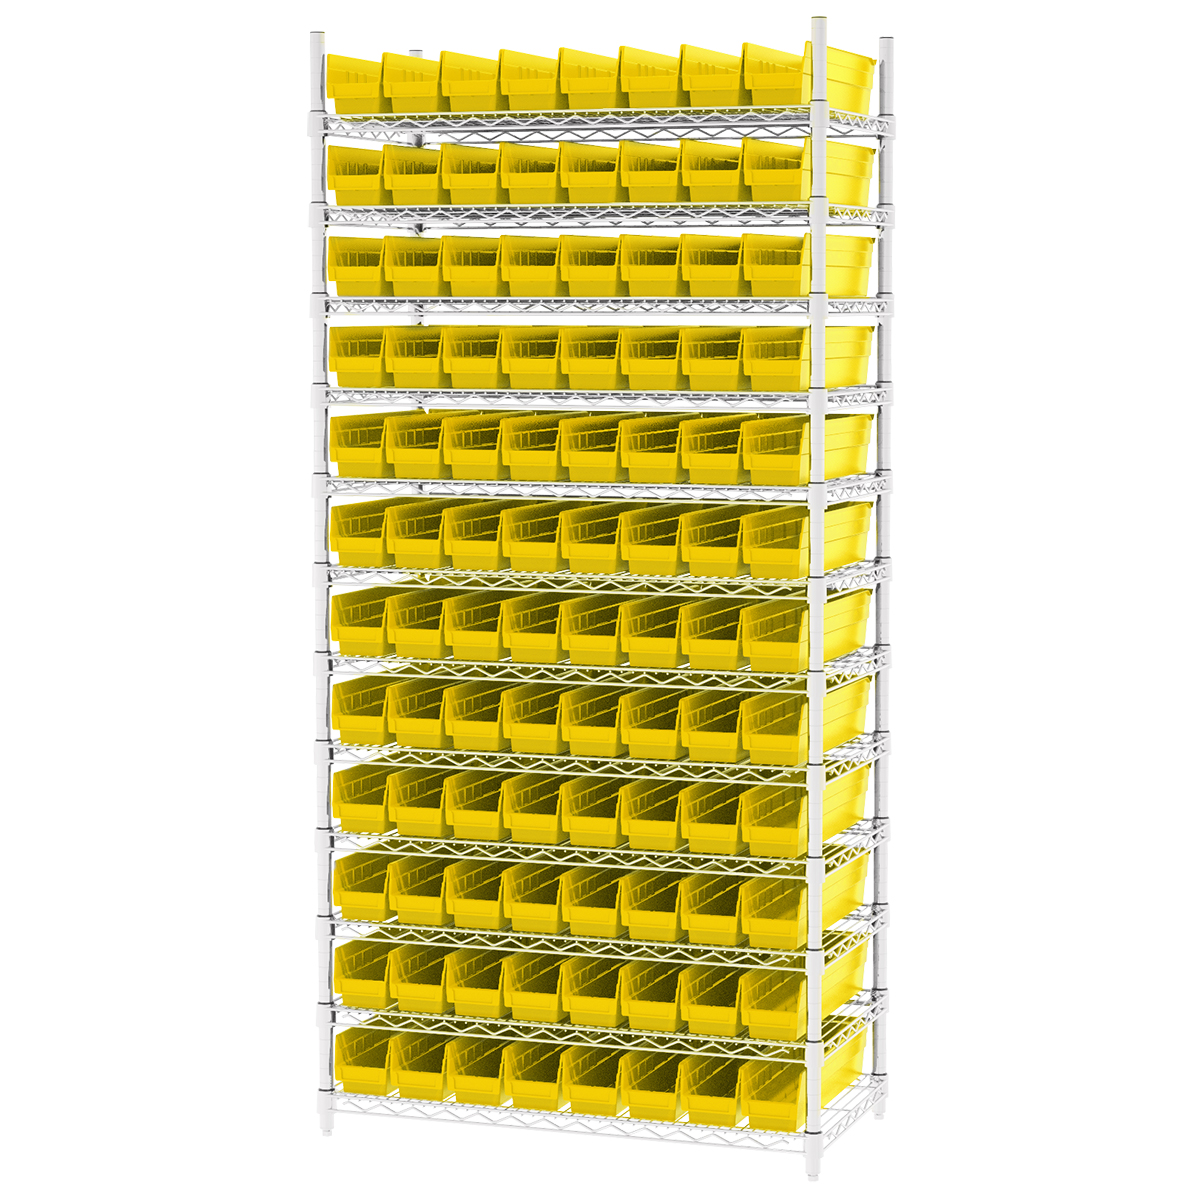 Shelf Bin Unit w/ 48 Economy Clear View Bins - 18 x 36 x 39